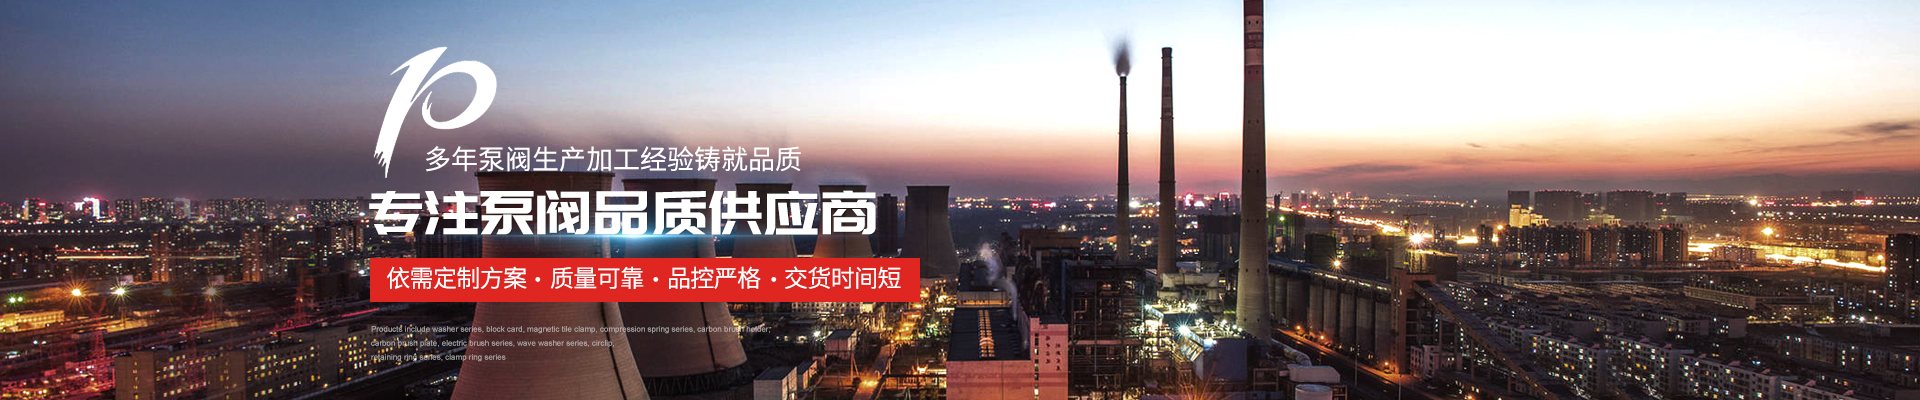 螺桿泵廠家 - 上海高適泵閥有限公司